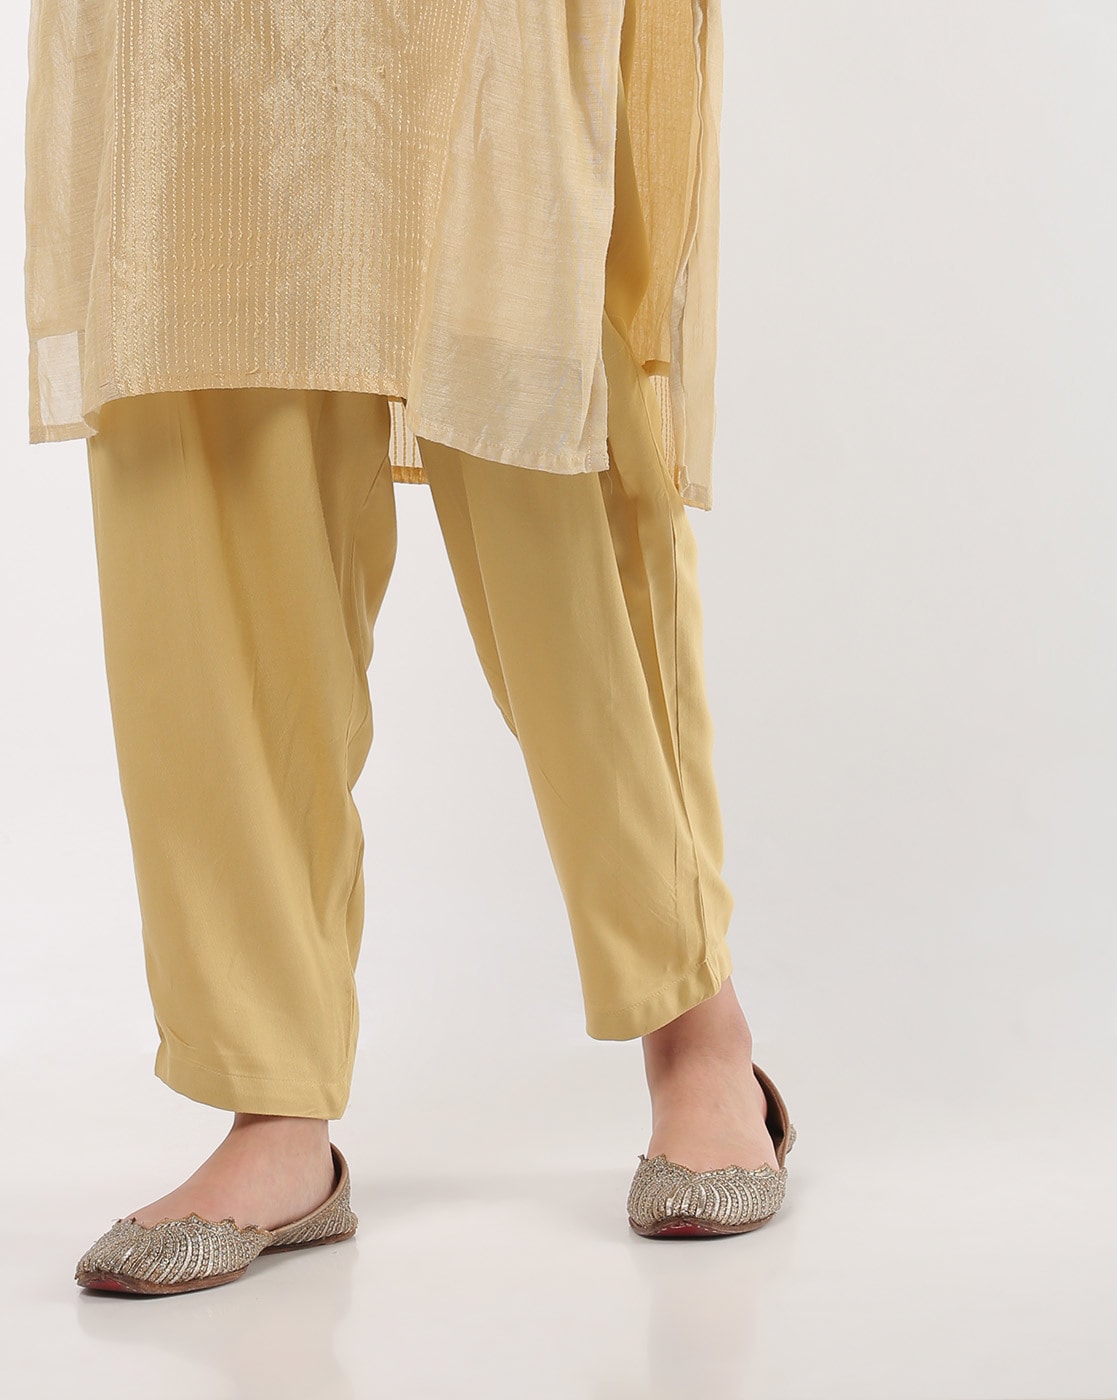 Buy Beige Pants for Women by DeMoza Online